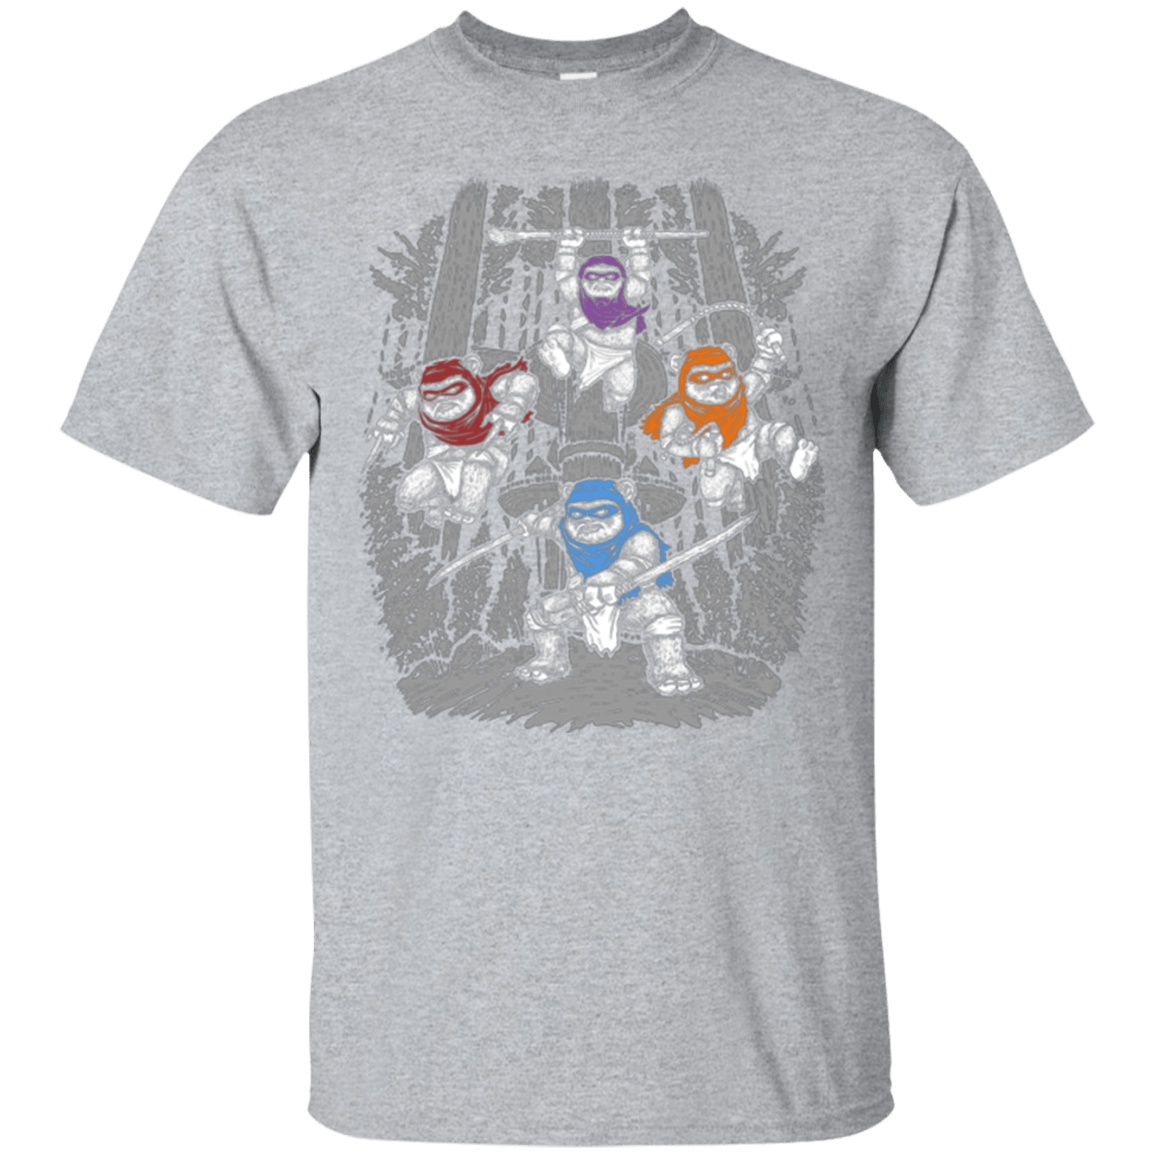 The Ninja Savages T-Shirt